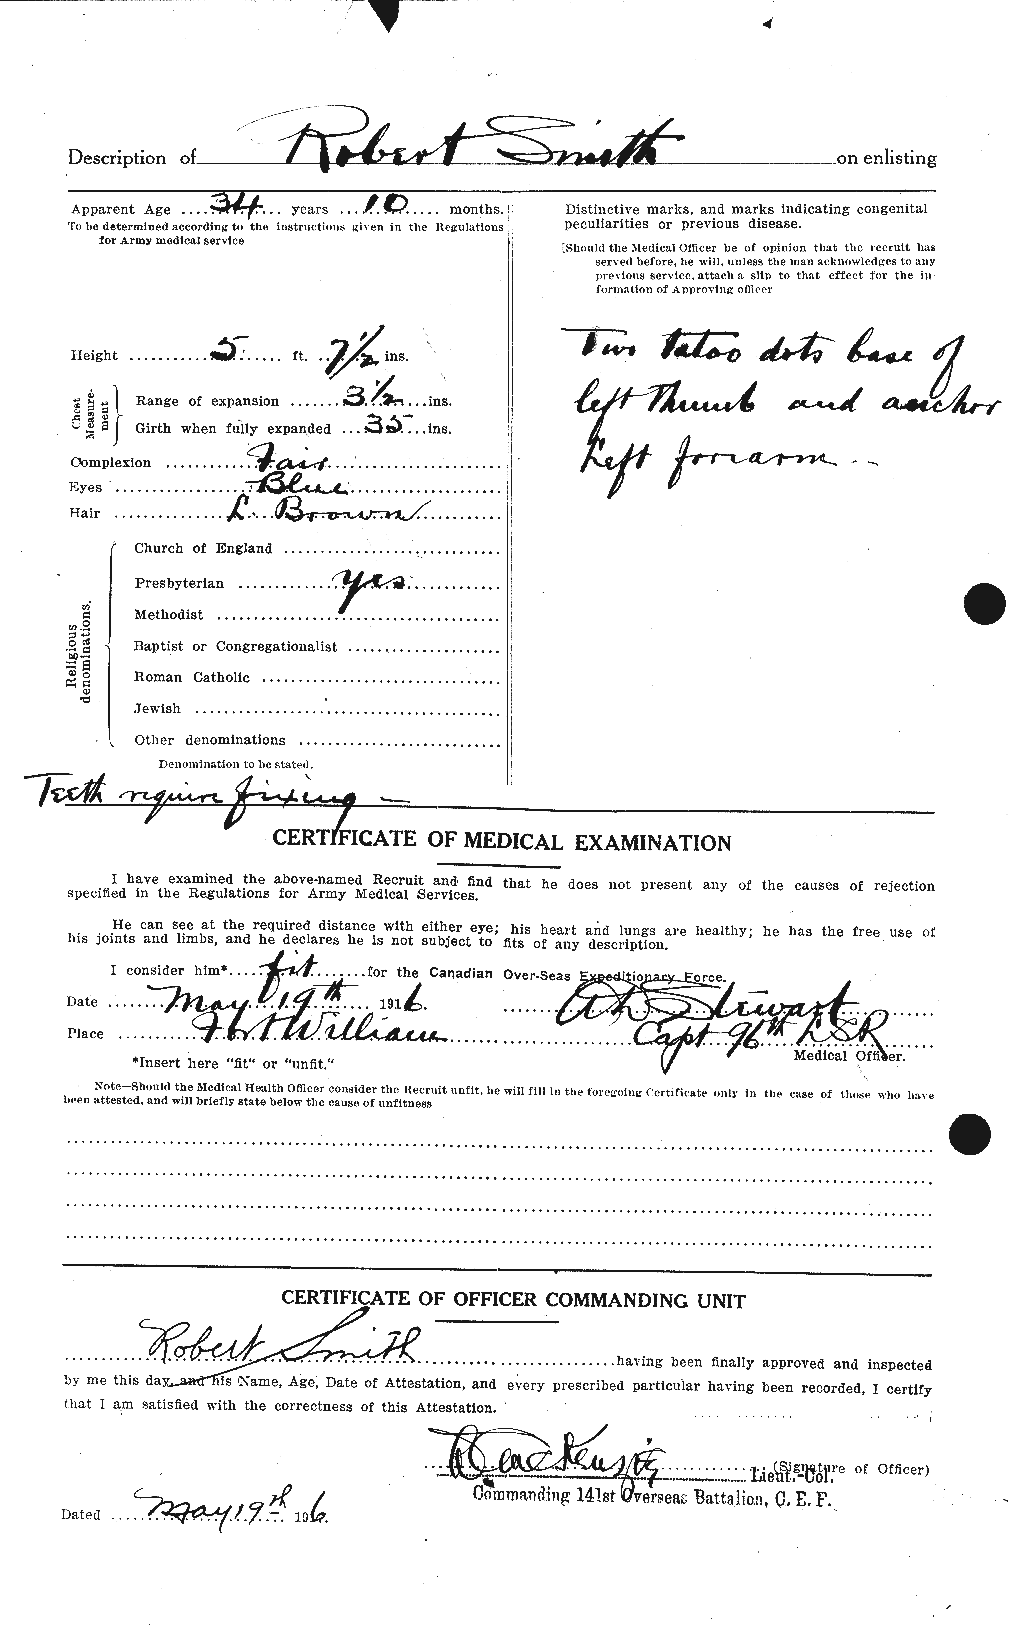 Dossiers du Personnel de la Première Guerre mondiale - CEC 110252b